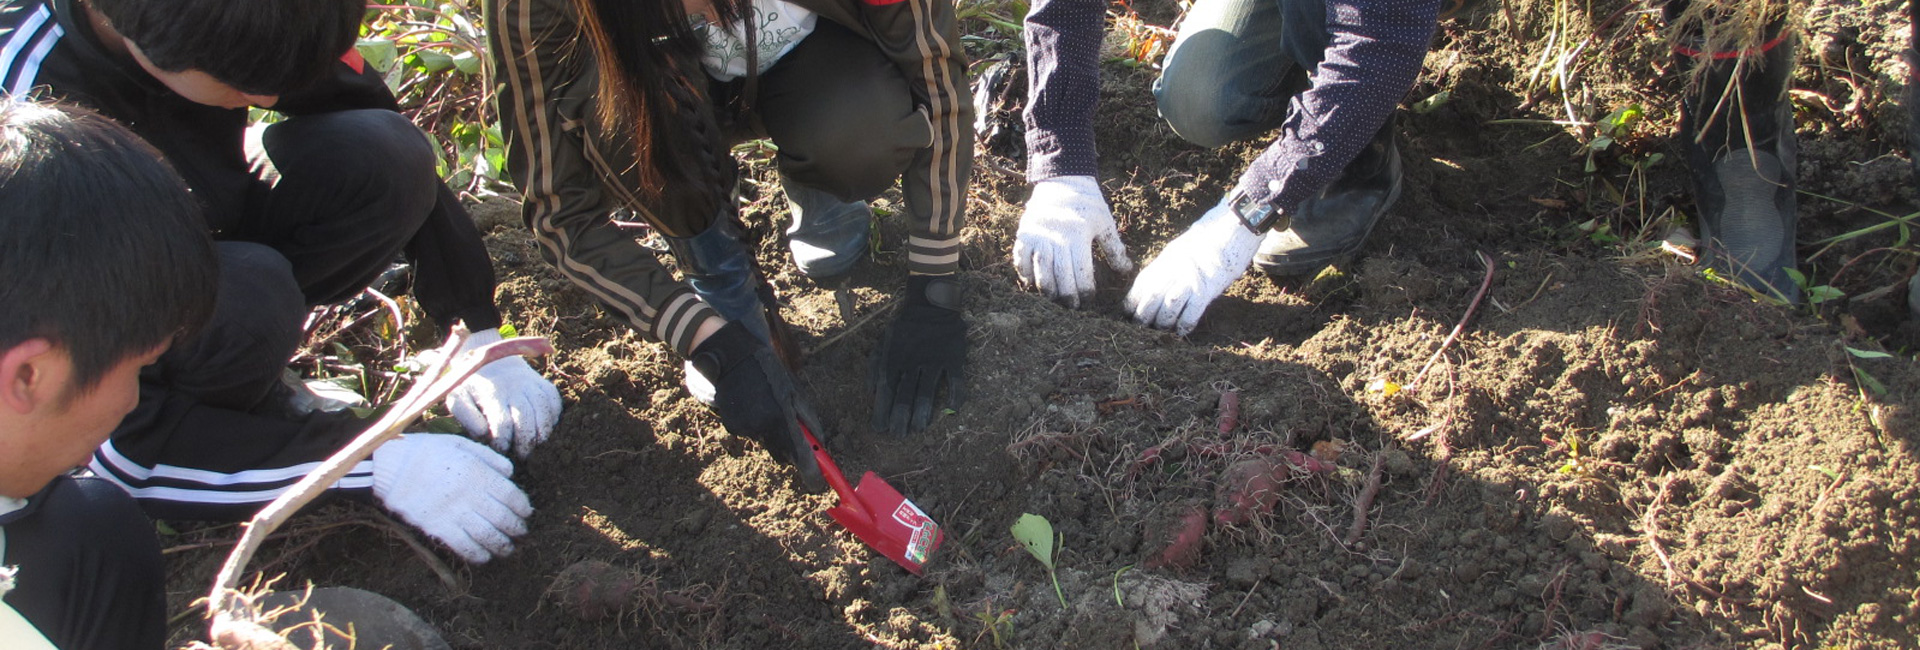 「食の循環実習」で芋掘りを実施